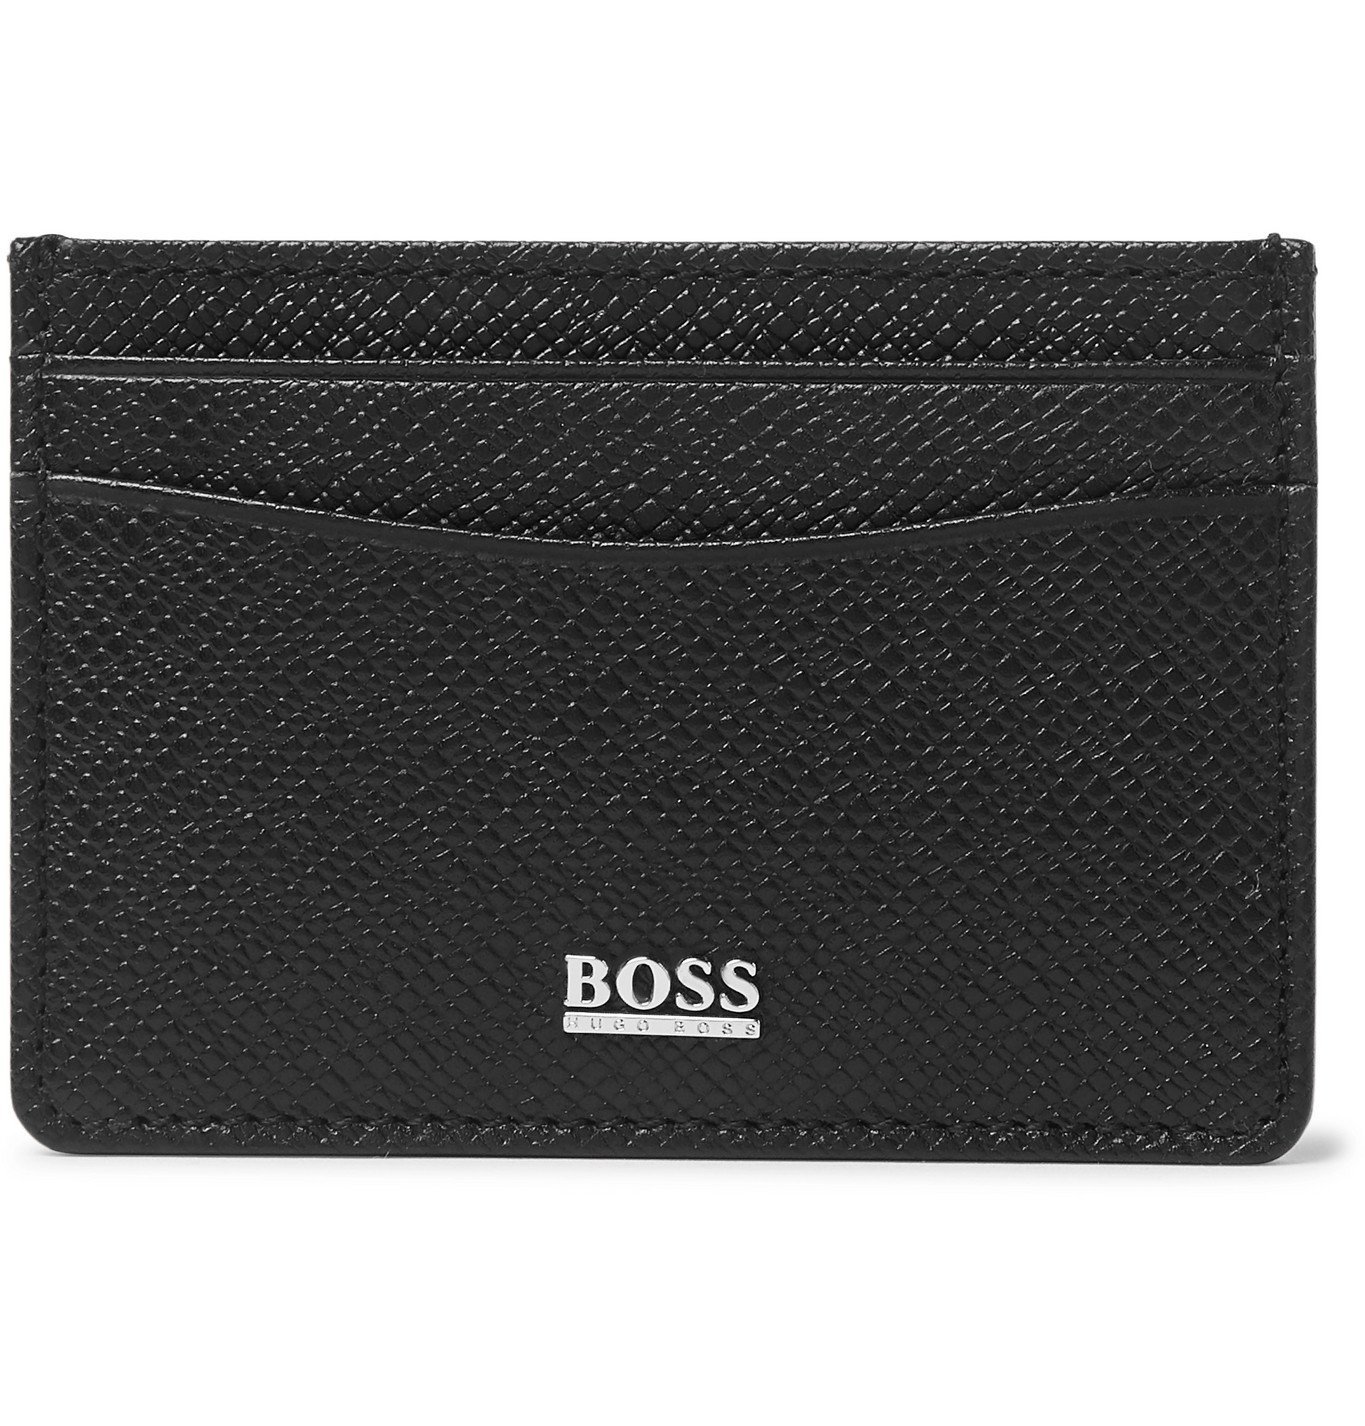 hugo boss money clip wallet